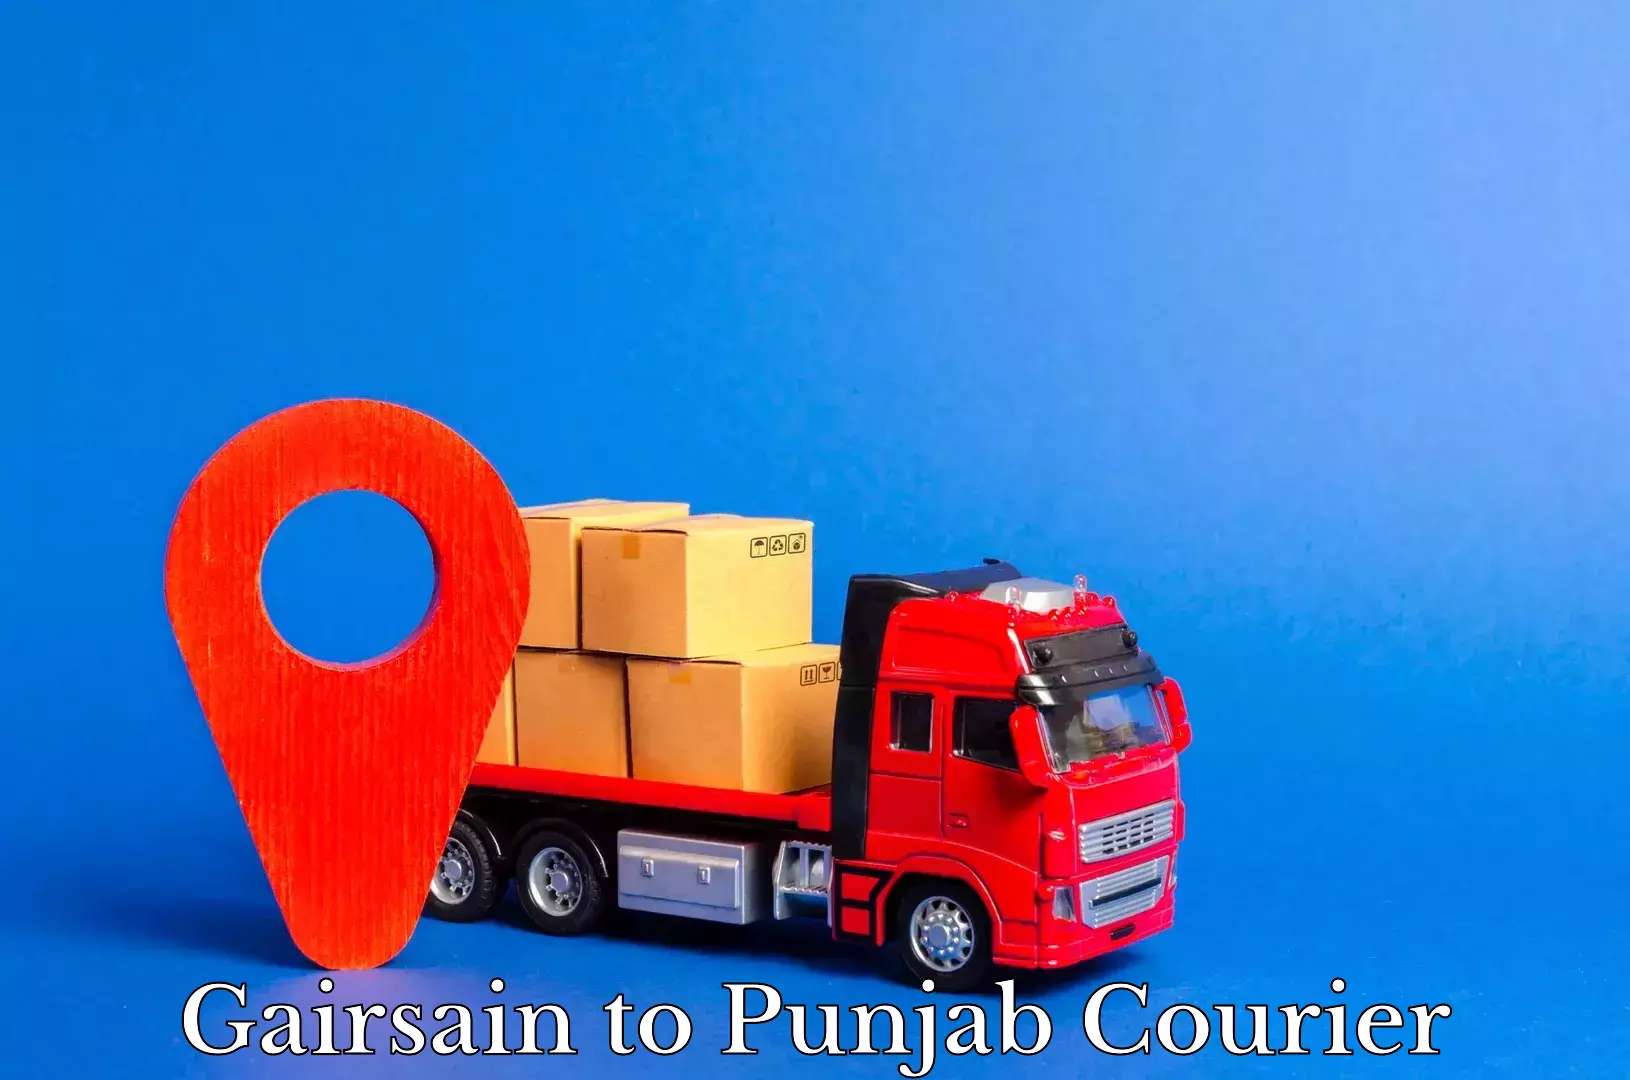 Express courier facilities Gairsain to Punjab